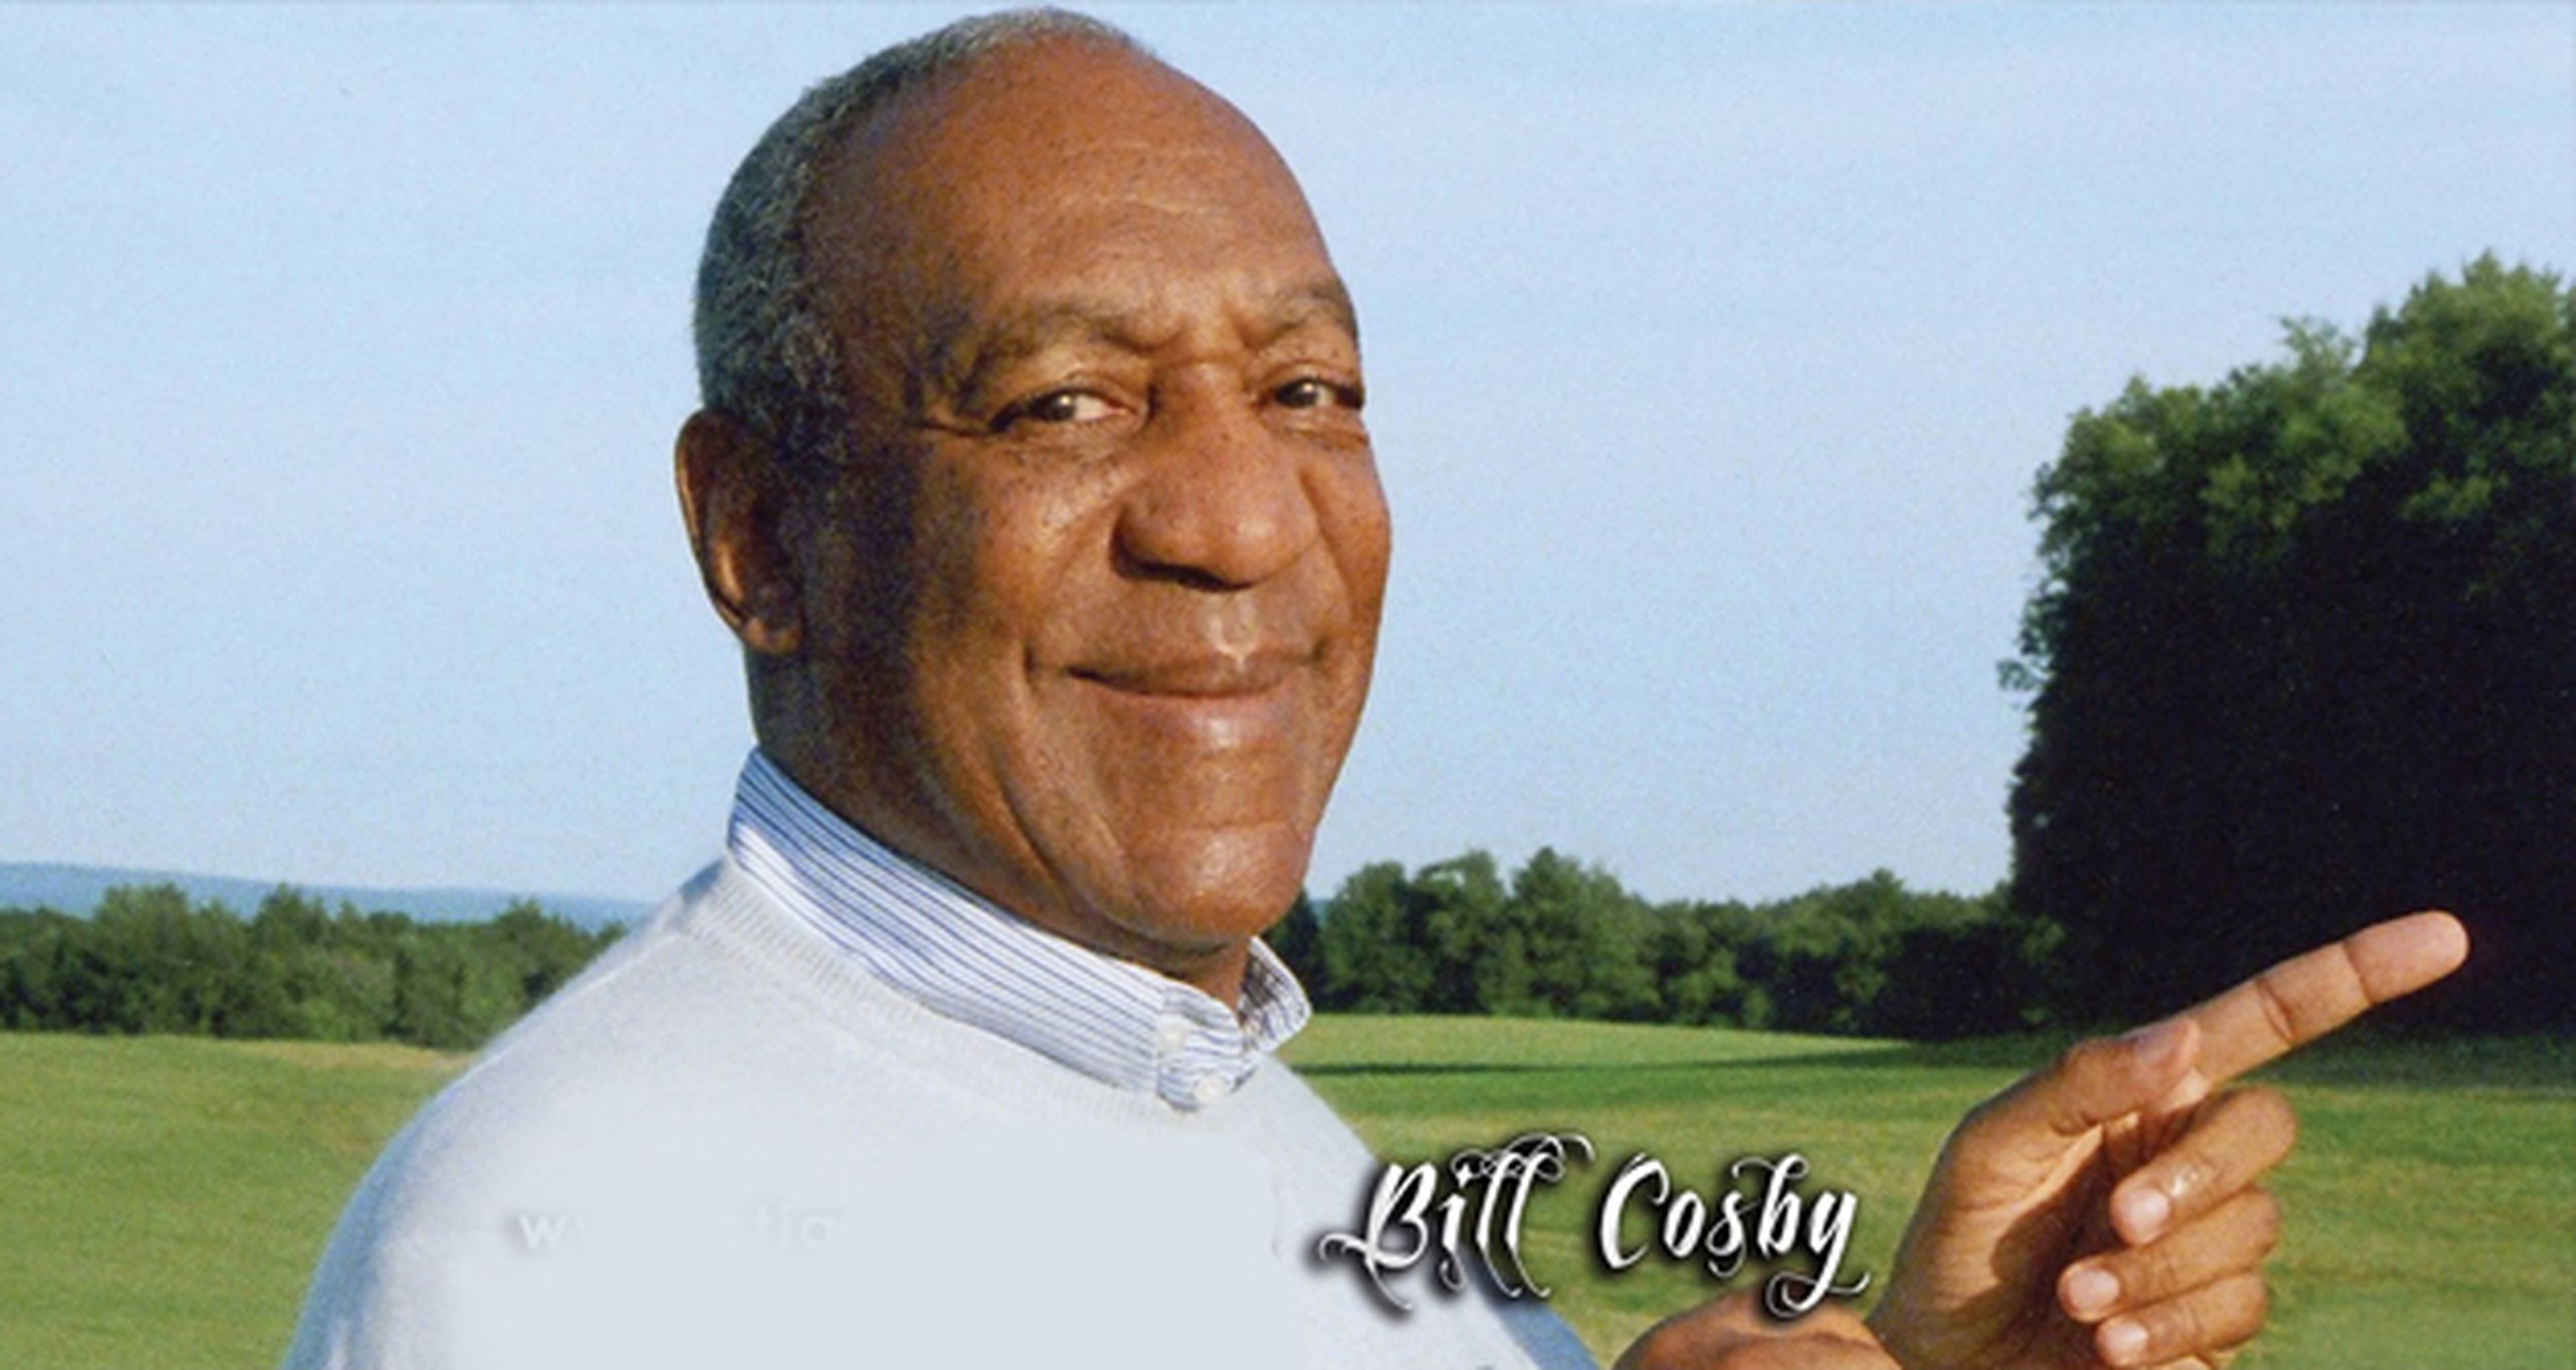 ¡Bill Cosby vuelve a la televisión!